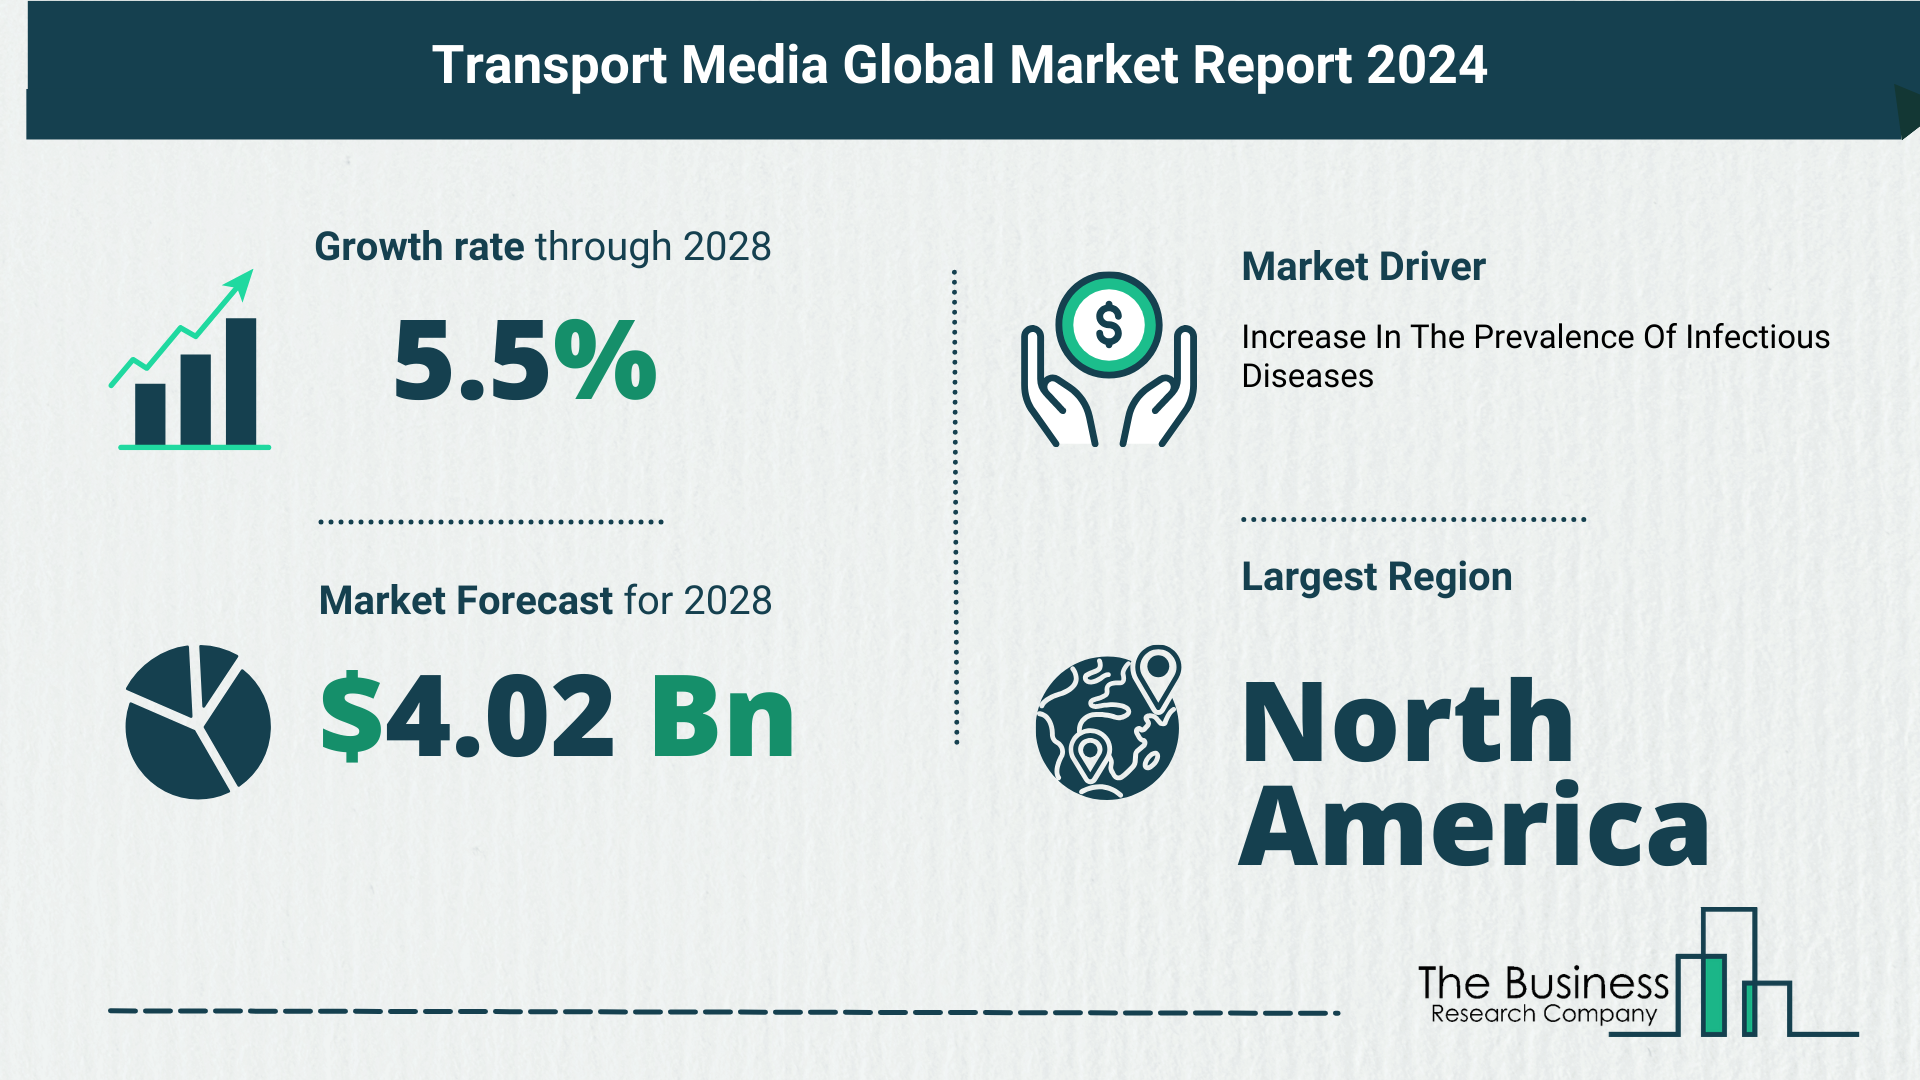 Global Transport Media Market